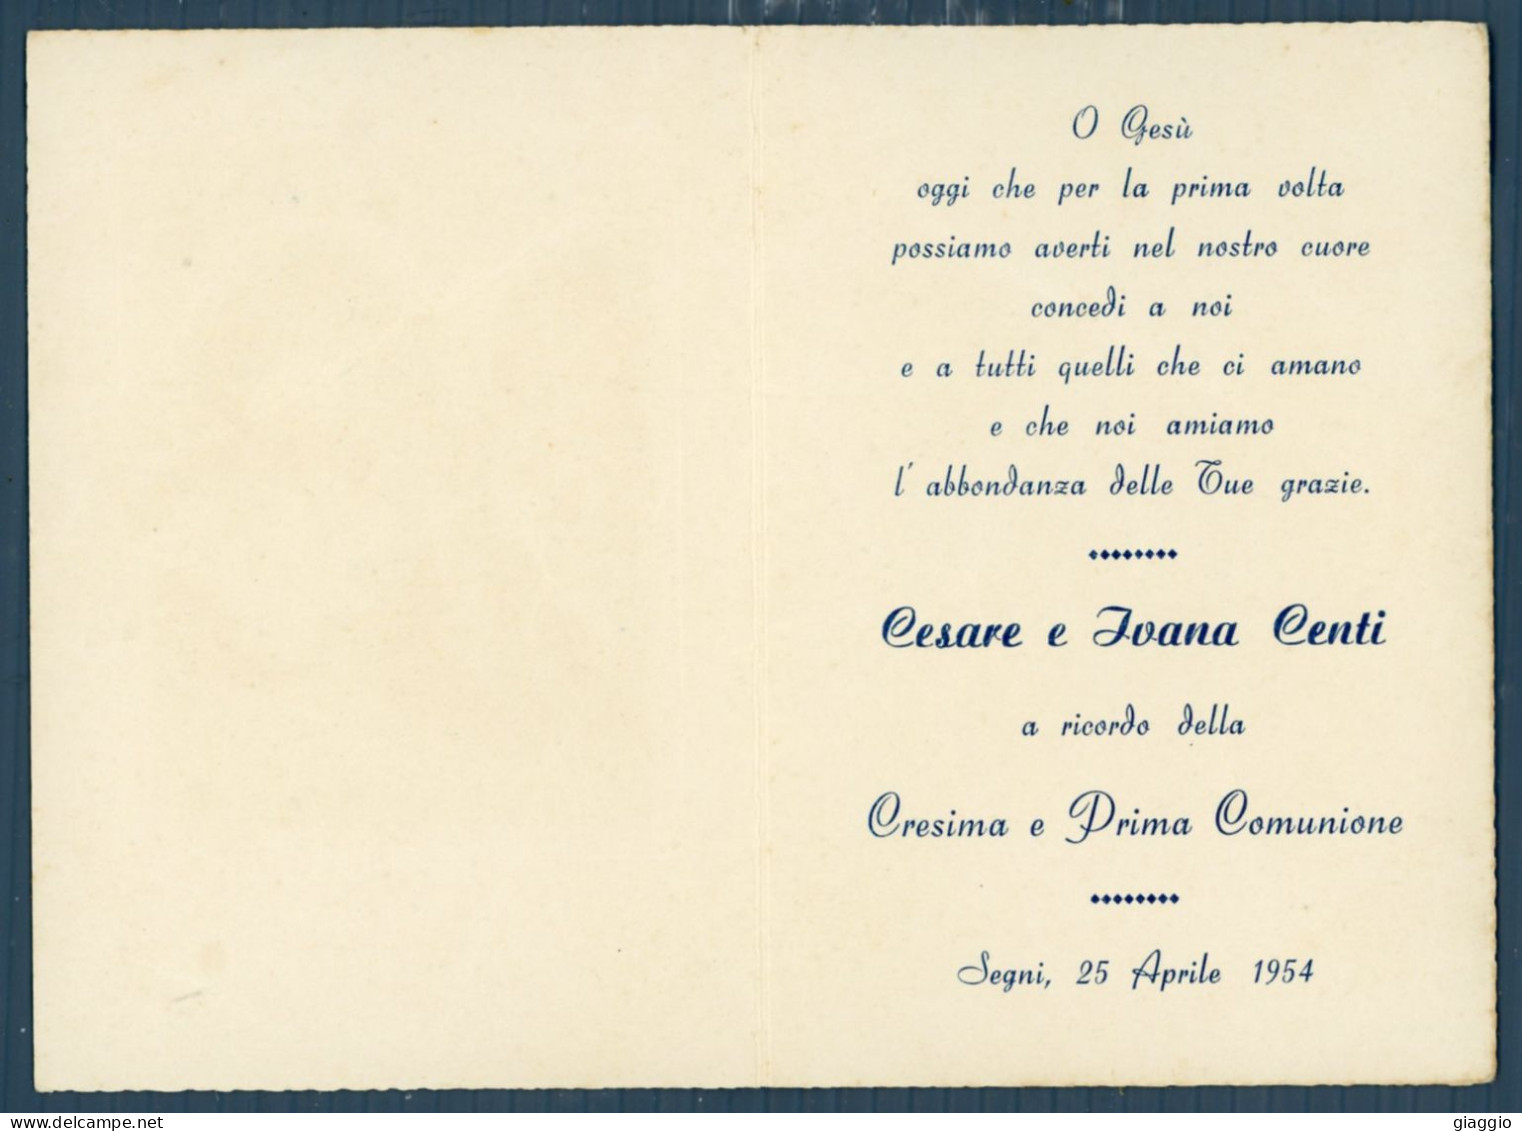 °°° Santino N. 8642 - Ricordo Della Cresima E Prima Comunione - Segni 1954 °°° - Godsdienst & Esoterisme